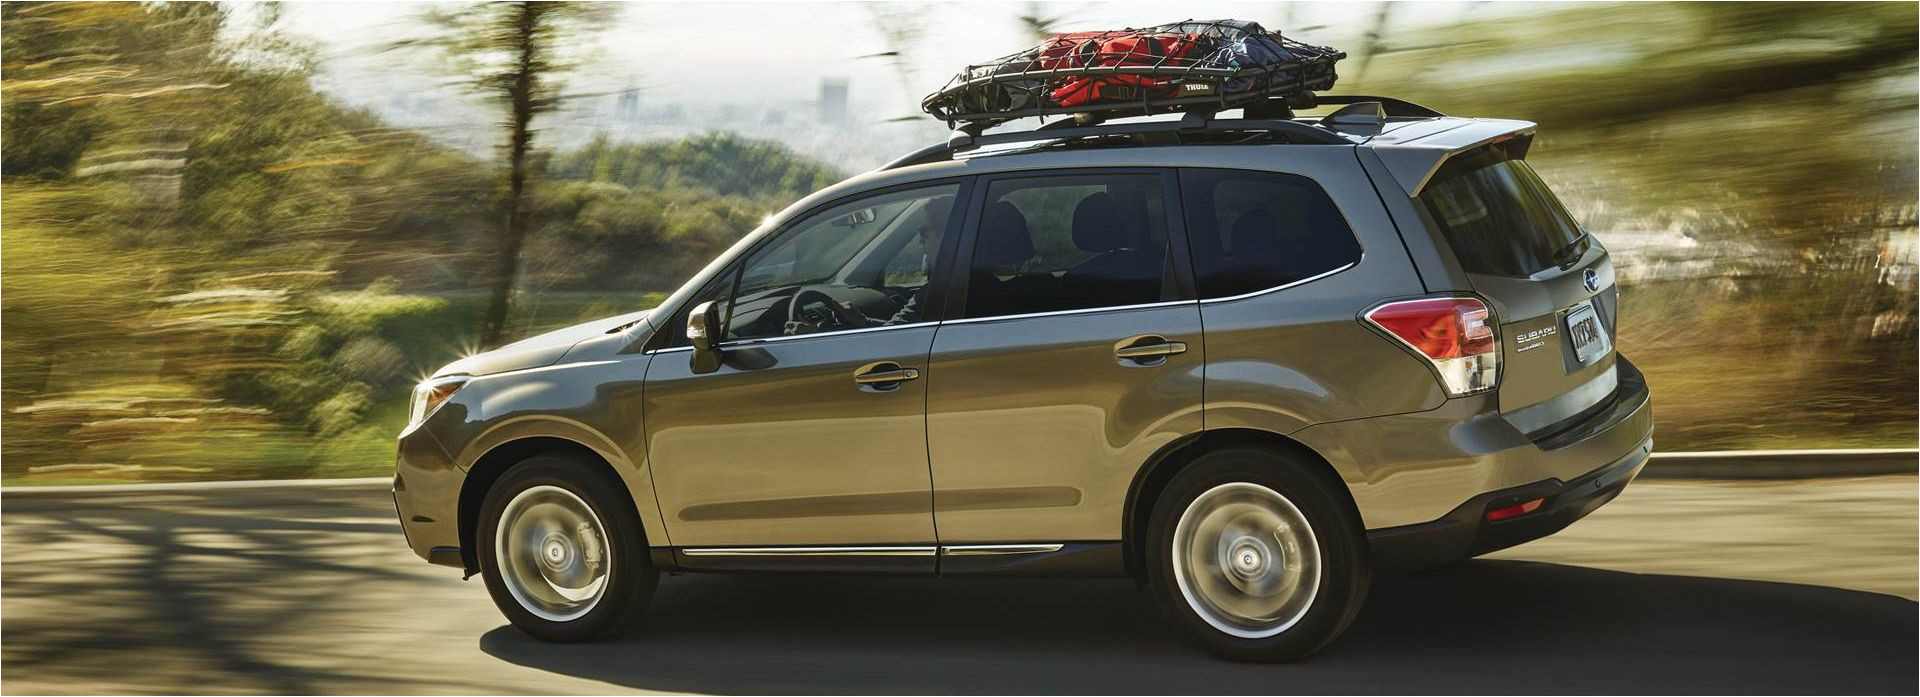 Offer Up Sacramento Ca 2018 Subaru forester for Sale In Sacramento Ca Maita Automotive Group